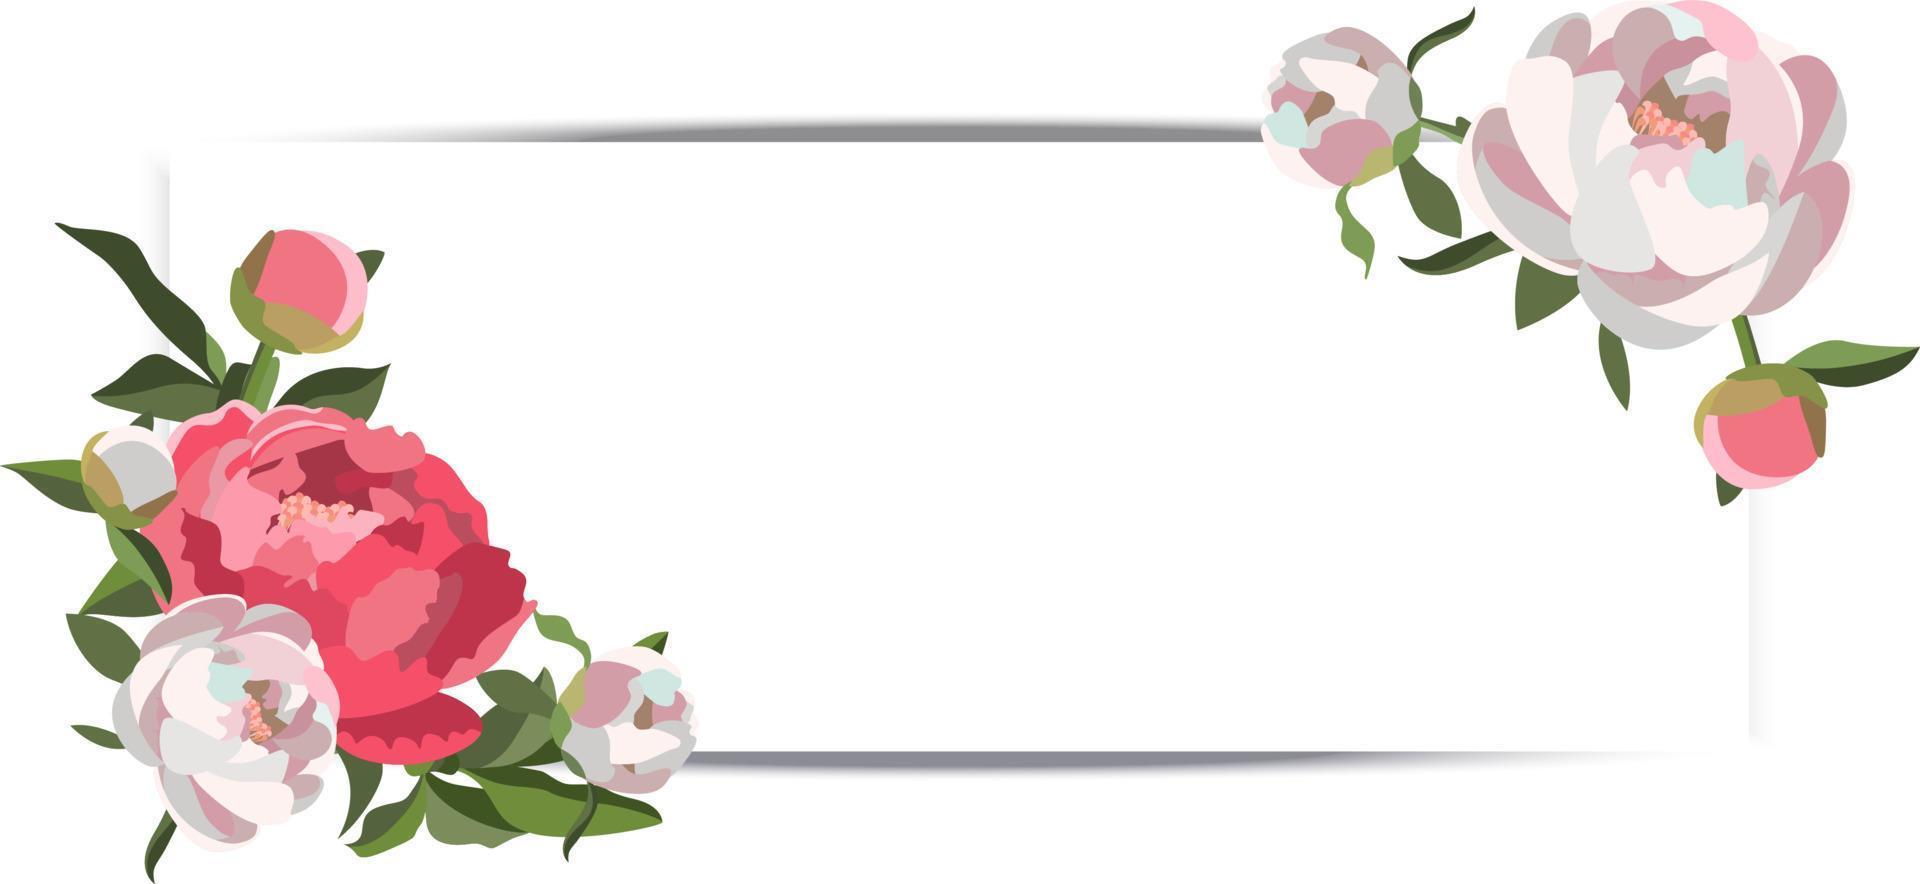 banner de casamento horizontal vetorial com composições florais de peônia branca e rosa vetor